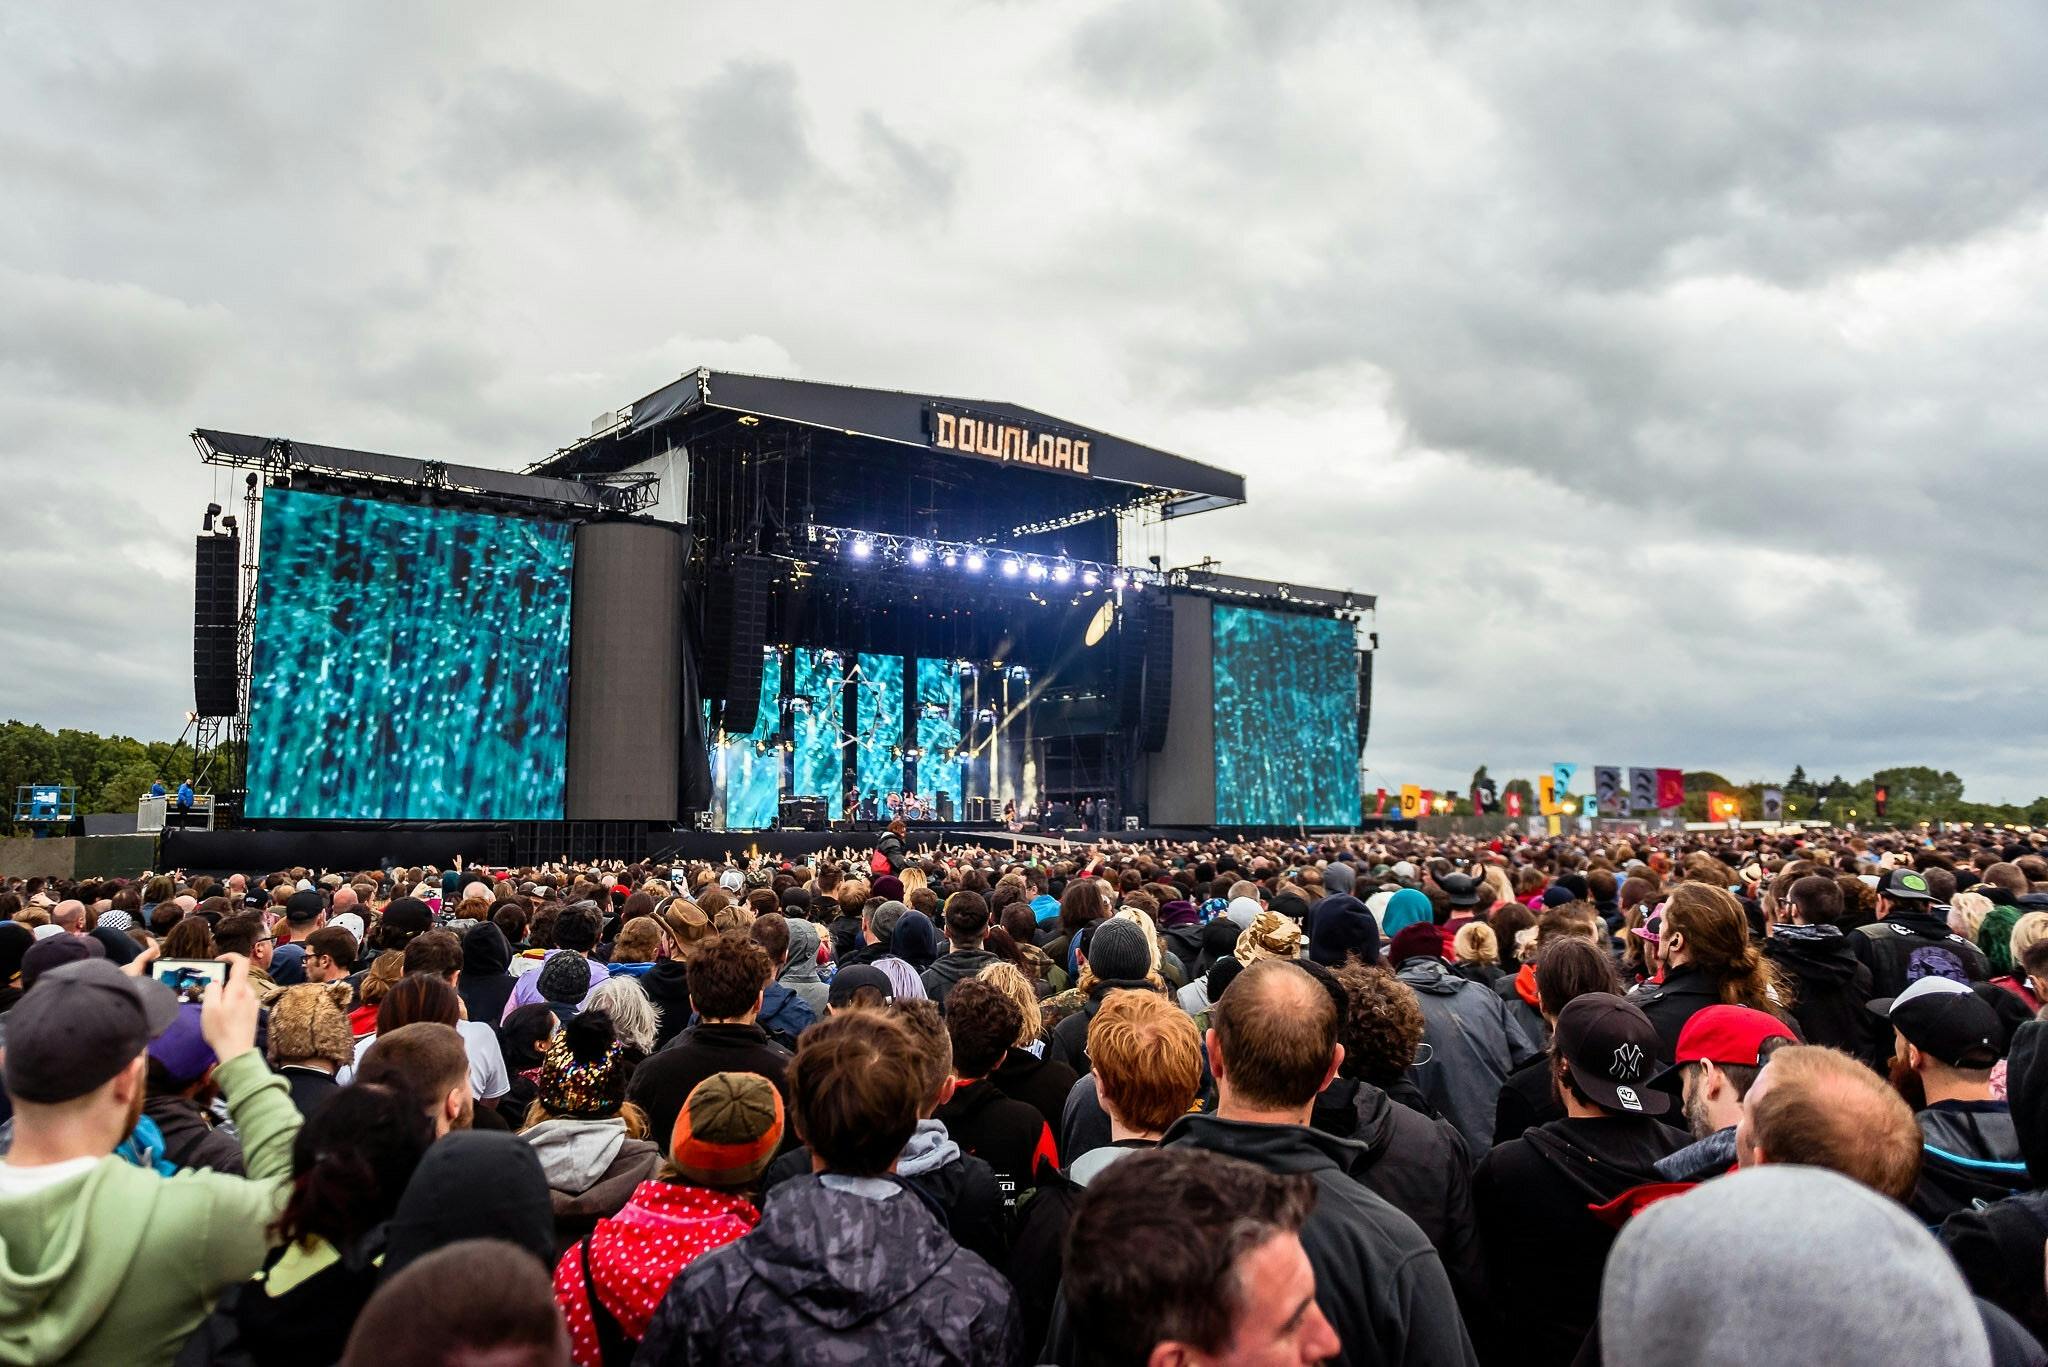 Download Festival Announces Major Site Improvements